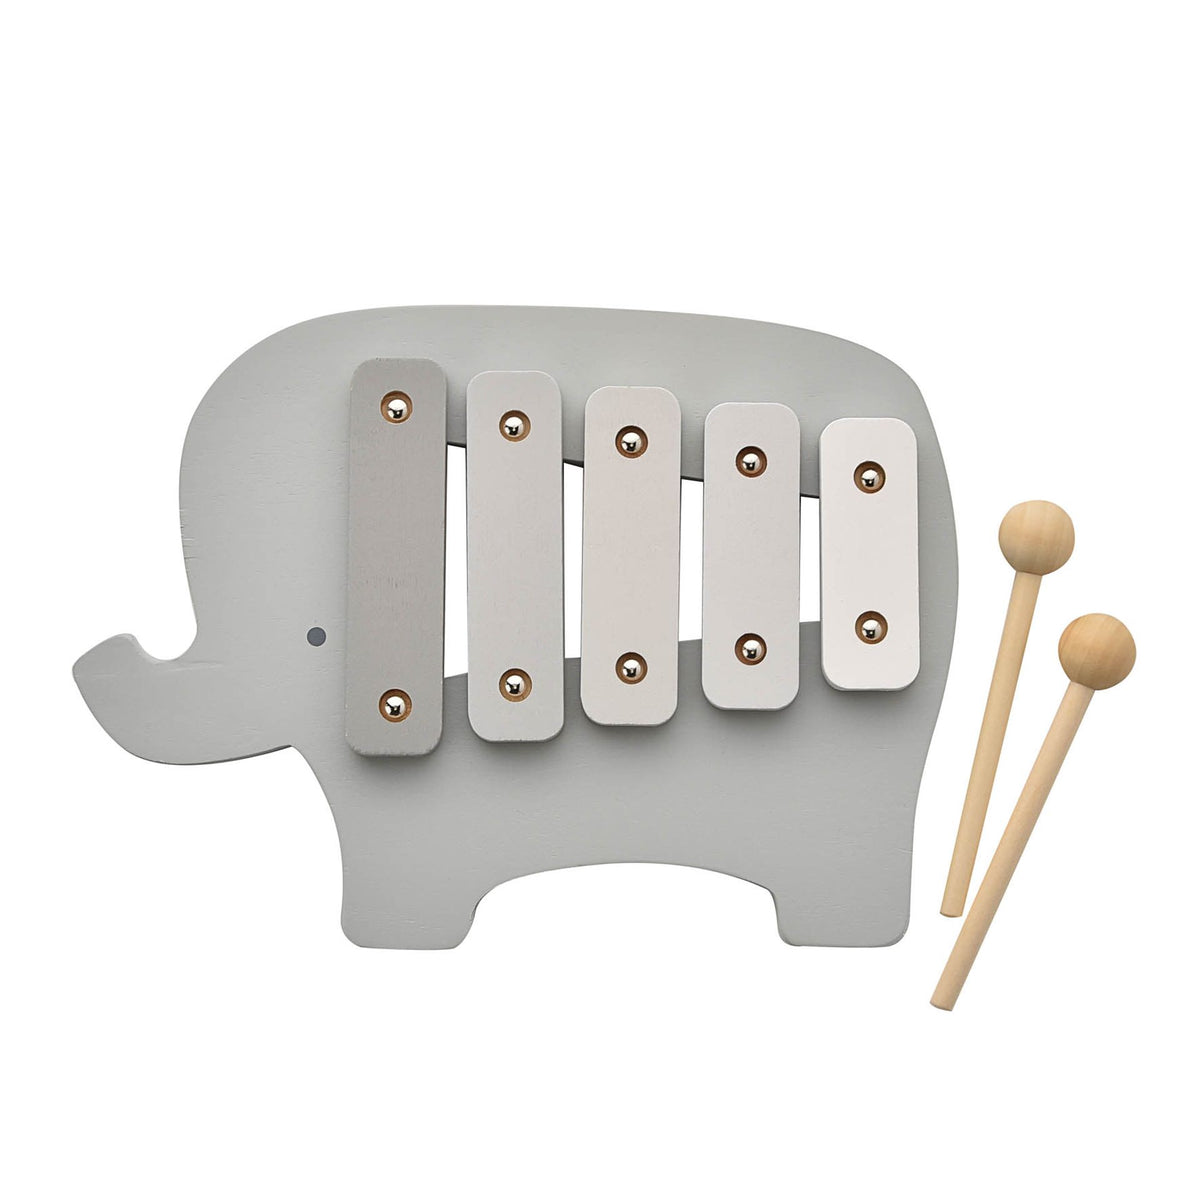 Elephant Wooden Xylophone